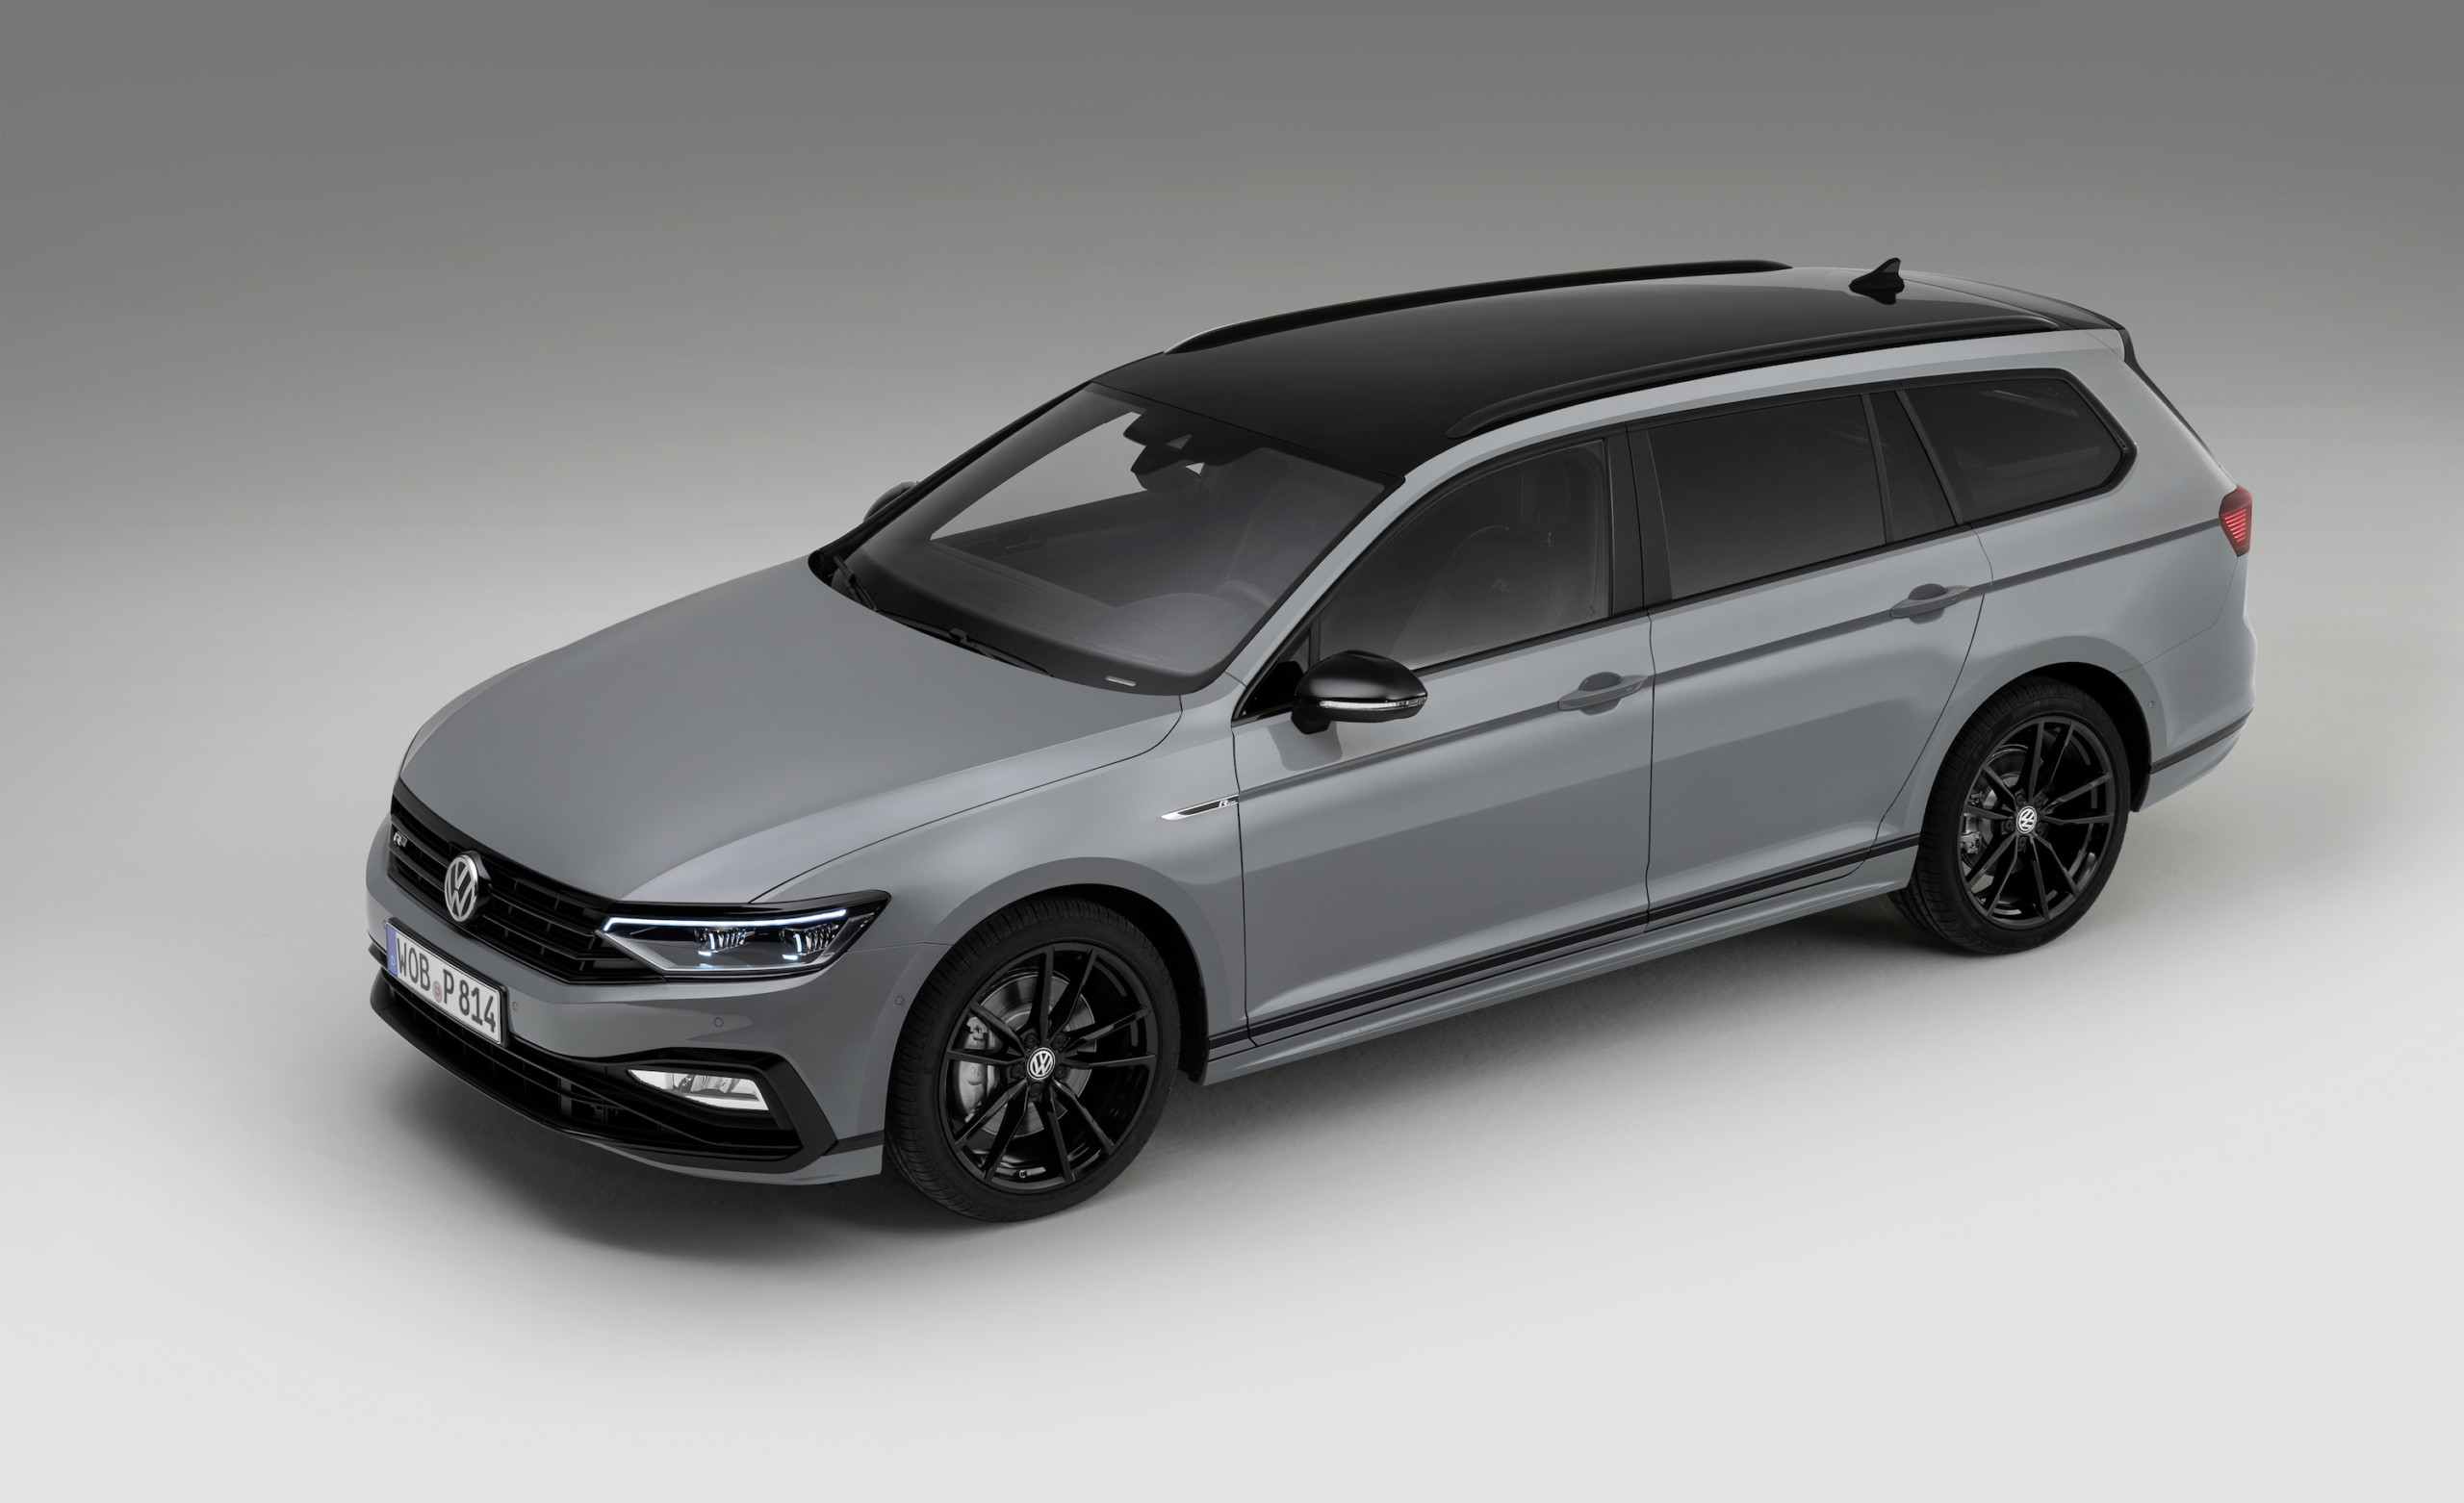 2022 Volkswagen Passat Tdi Premier Colors, Configurations ...